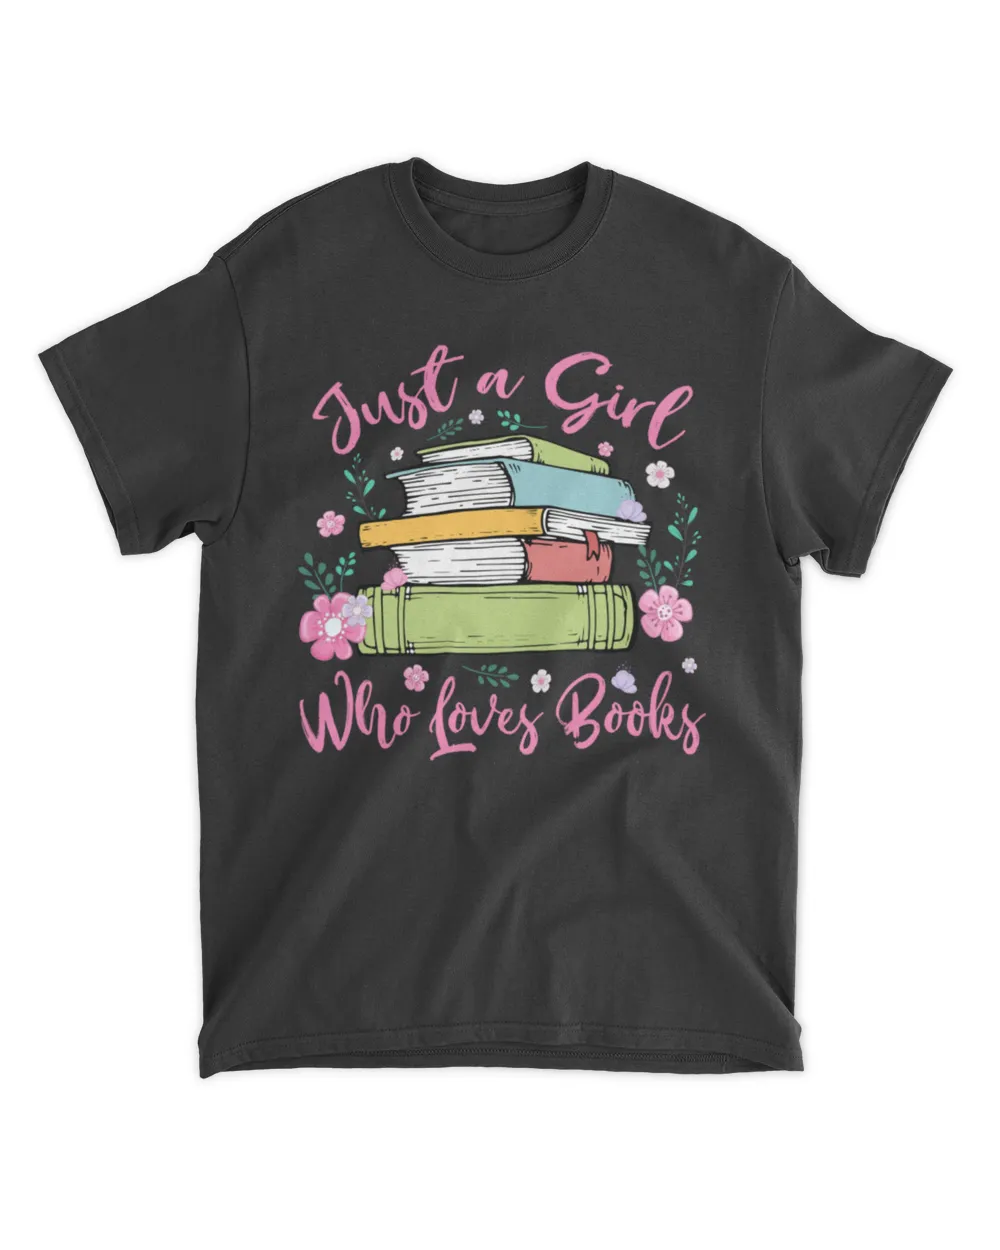 Books girl